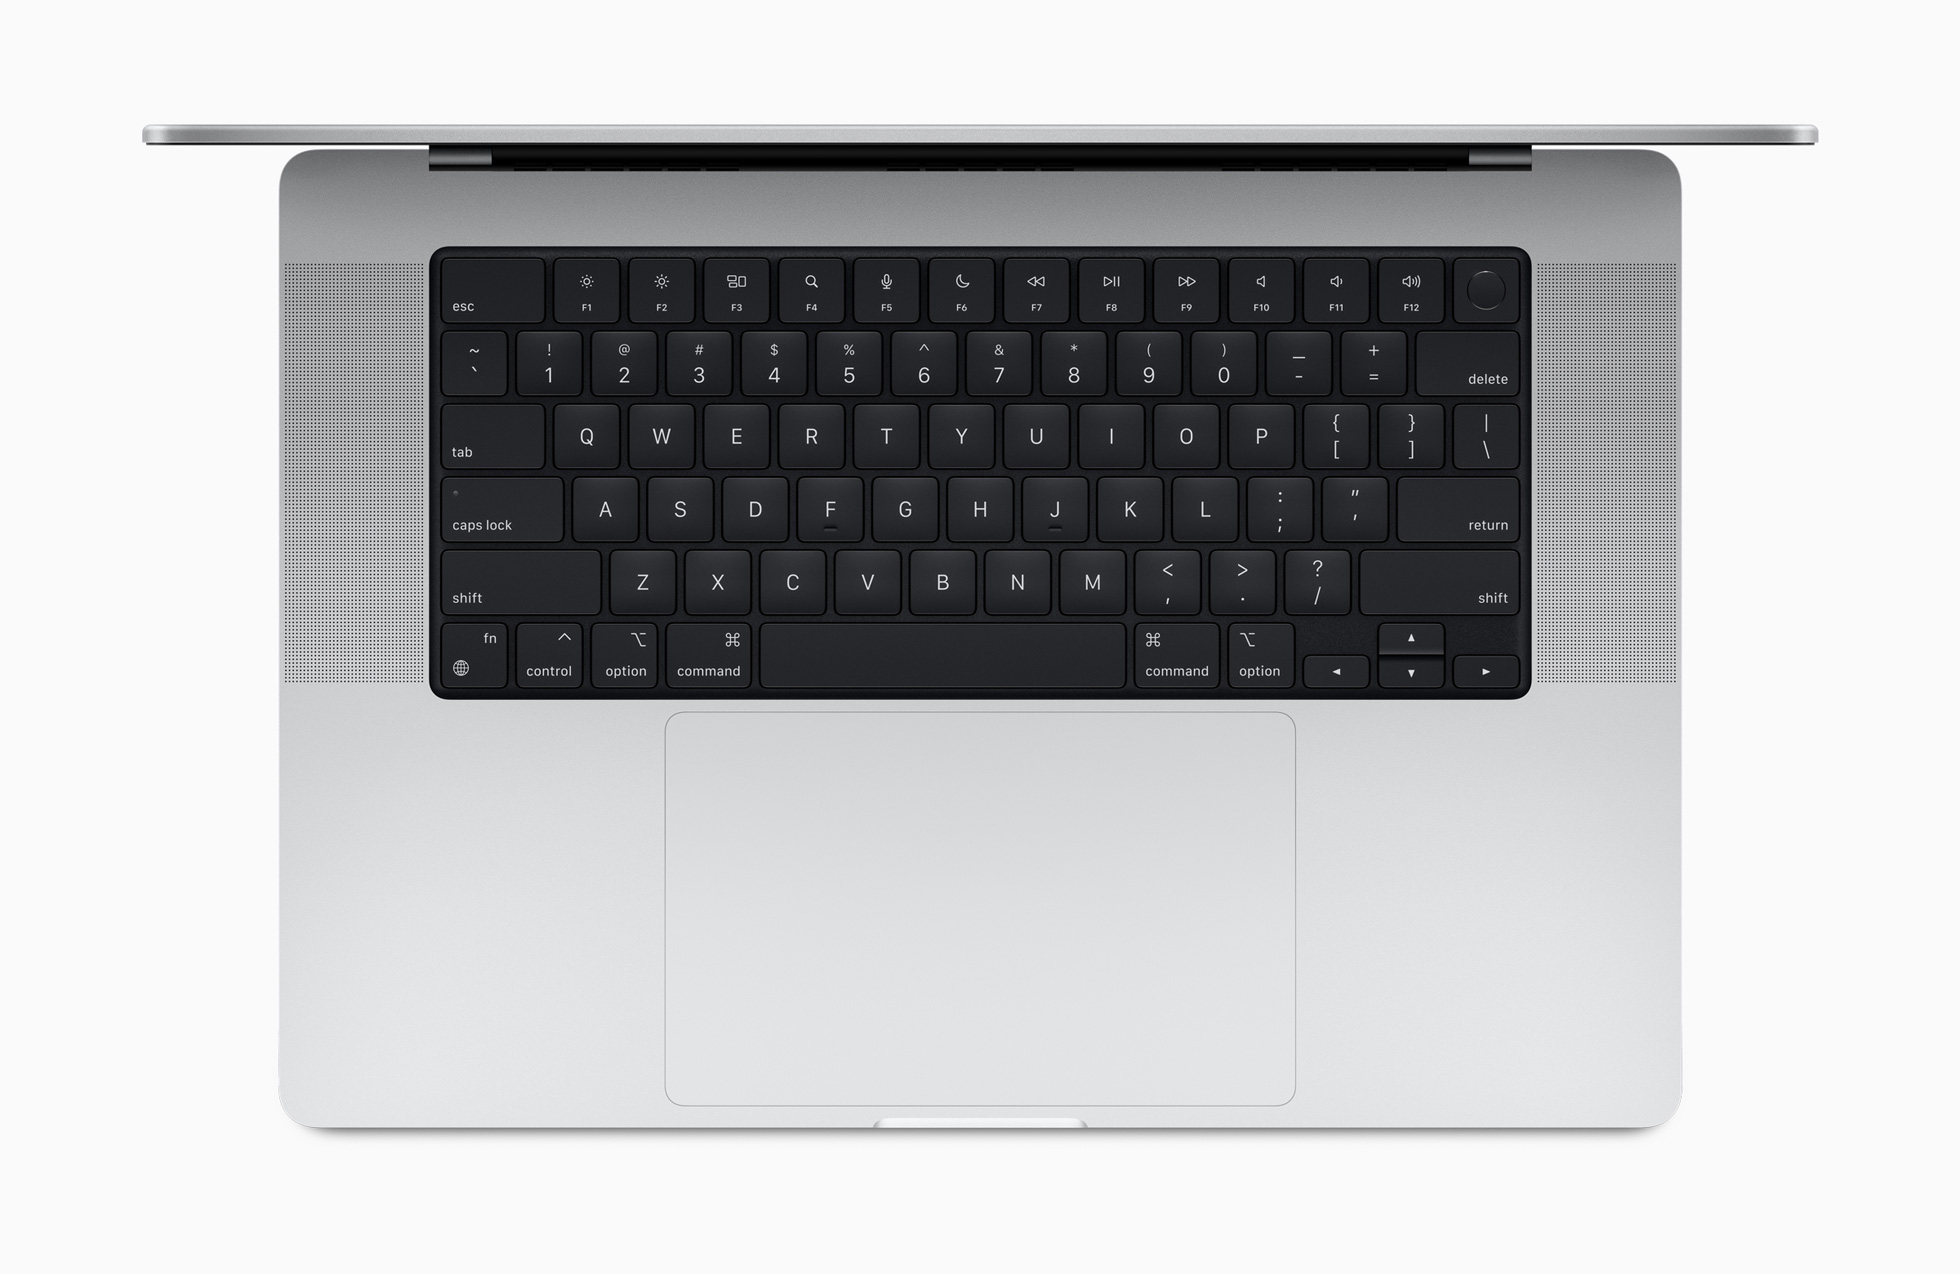 አዲሱ ጨዋታ MacBook Pro ን የሚቀይረው በአፕል ዝግጅት ላይ በጉጉት ሲጠበቅ የነበረውን የመጀመሪያውን ያደርገዋል